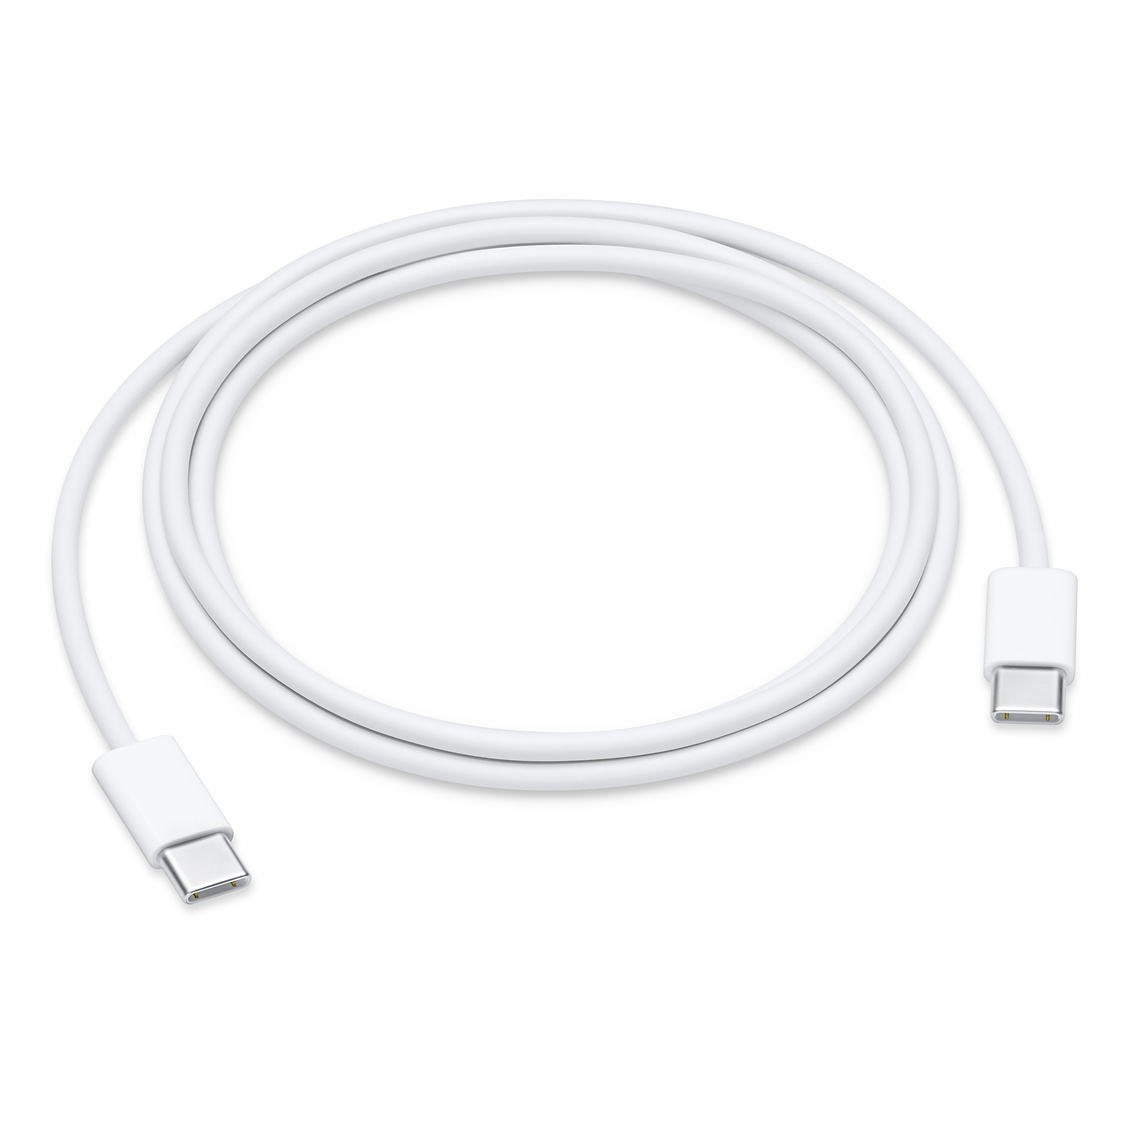 USB-C zu Lightning Kabel 2m weiss zum Synchronisieren und Laden